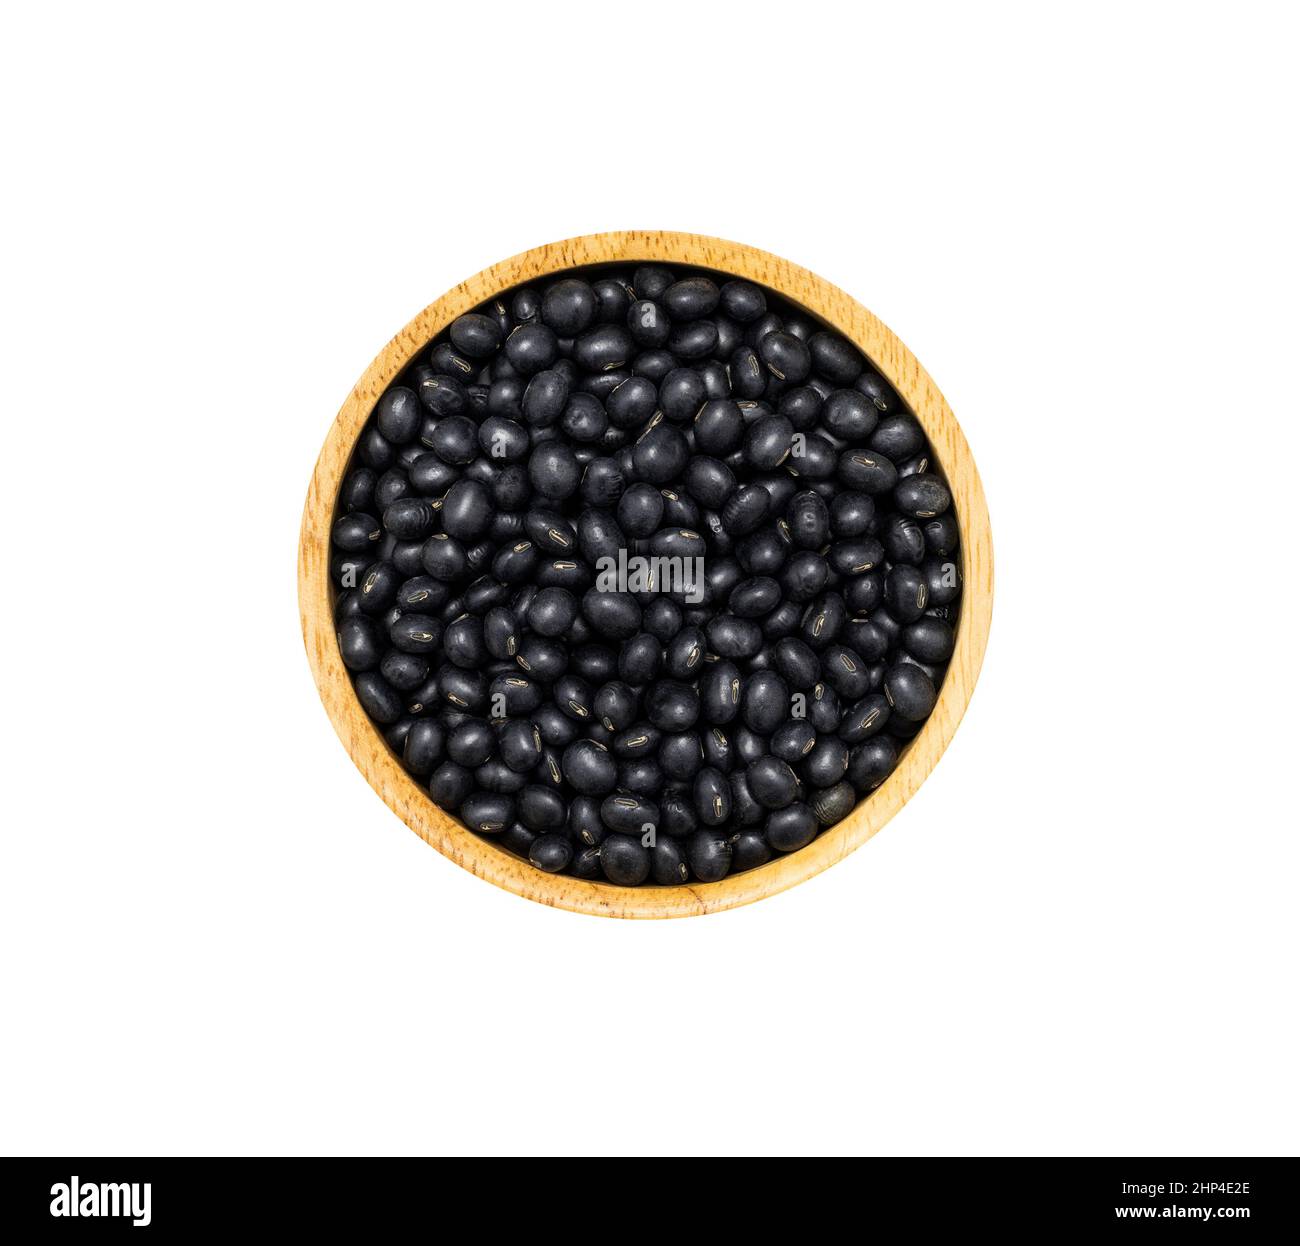 Soja noir dans un bol en bois marron isolé sur fond blanc, vue de dessus. Concept de super alimentation biologique saine Banque D'Images